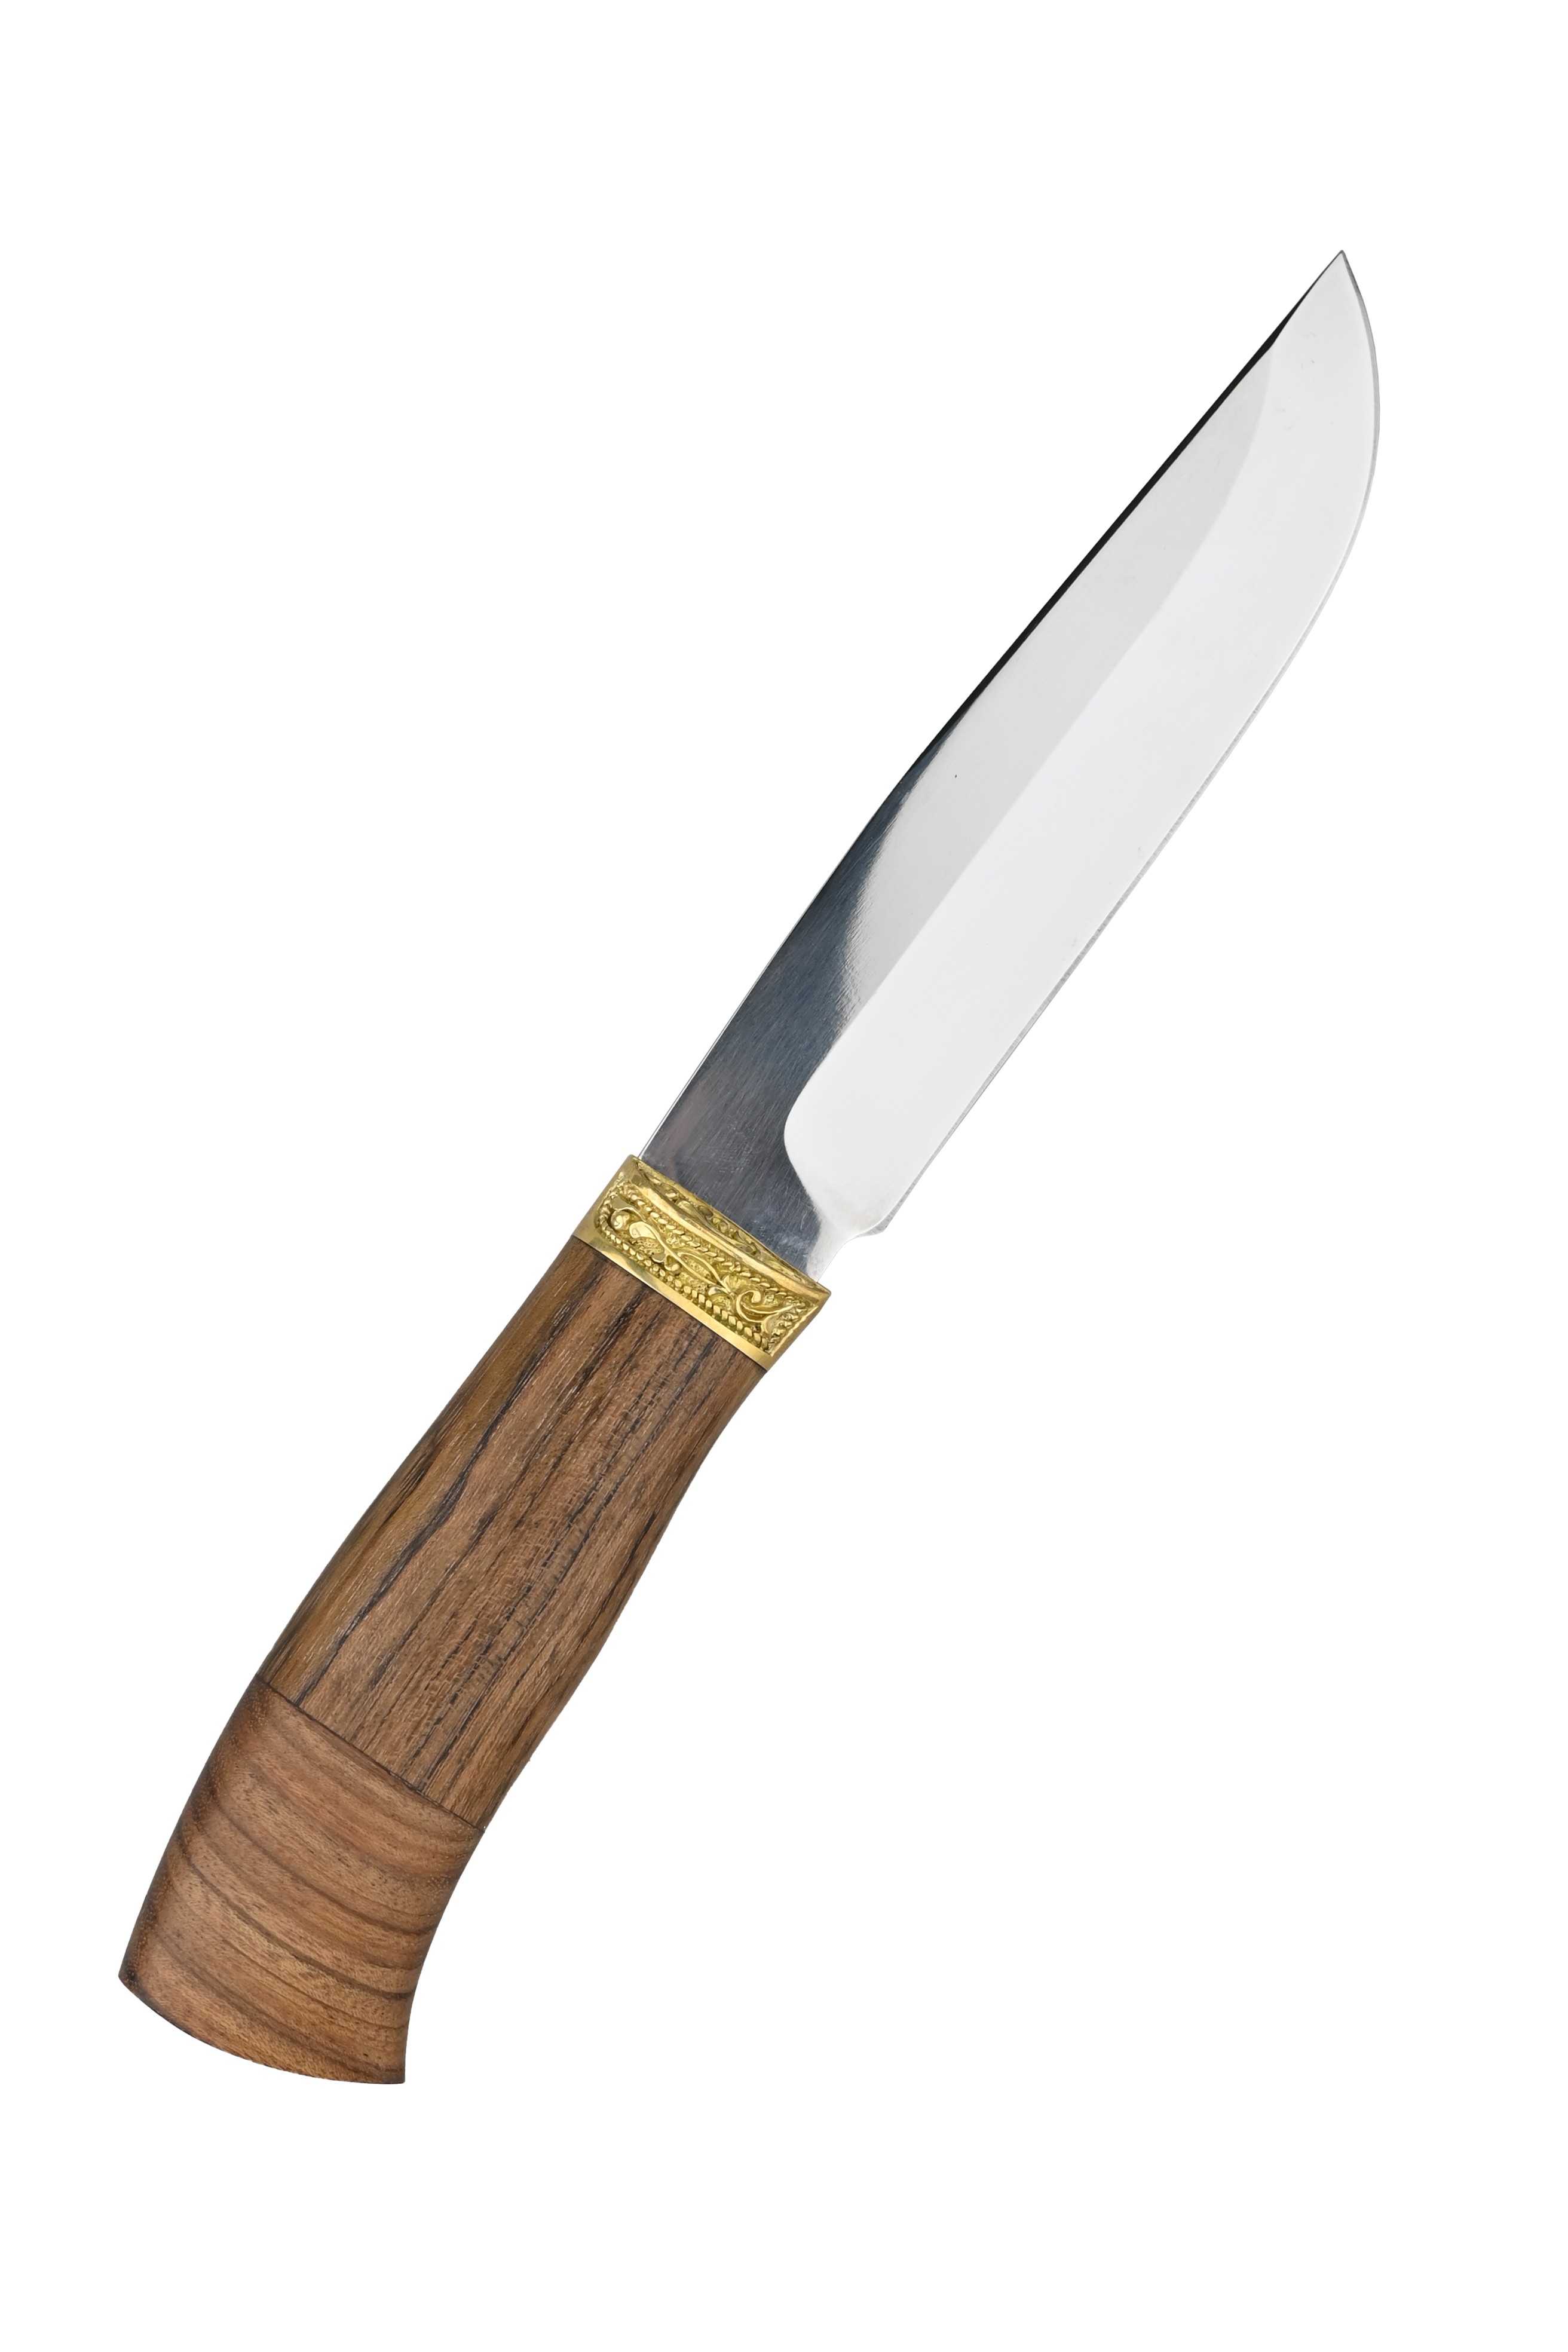 Нож ИП Семин Путник сталь 65х13 литье ценные породы дерева